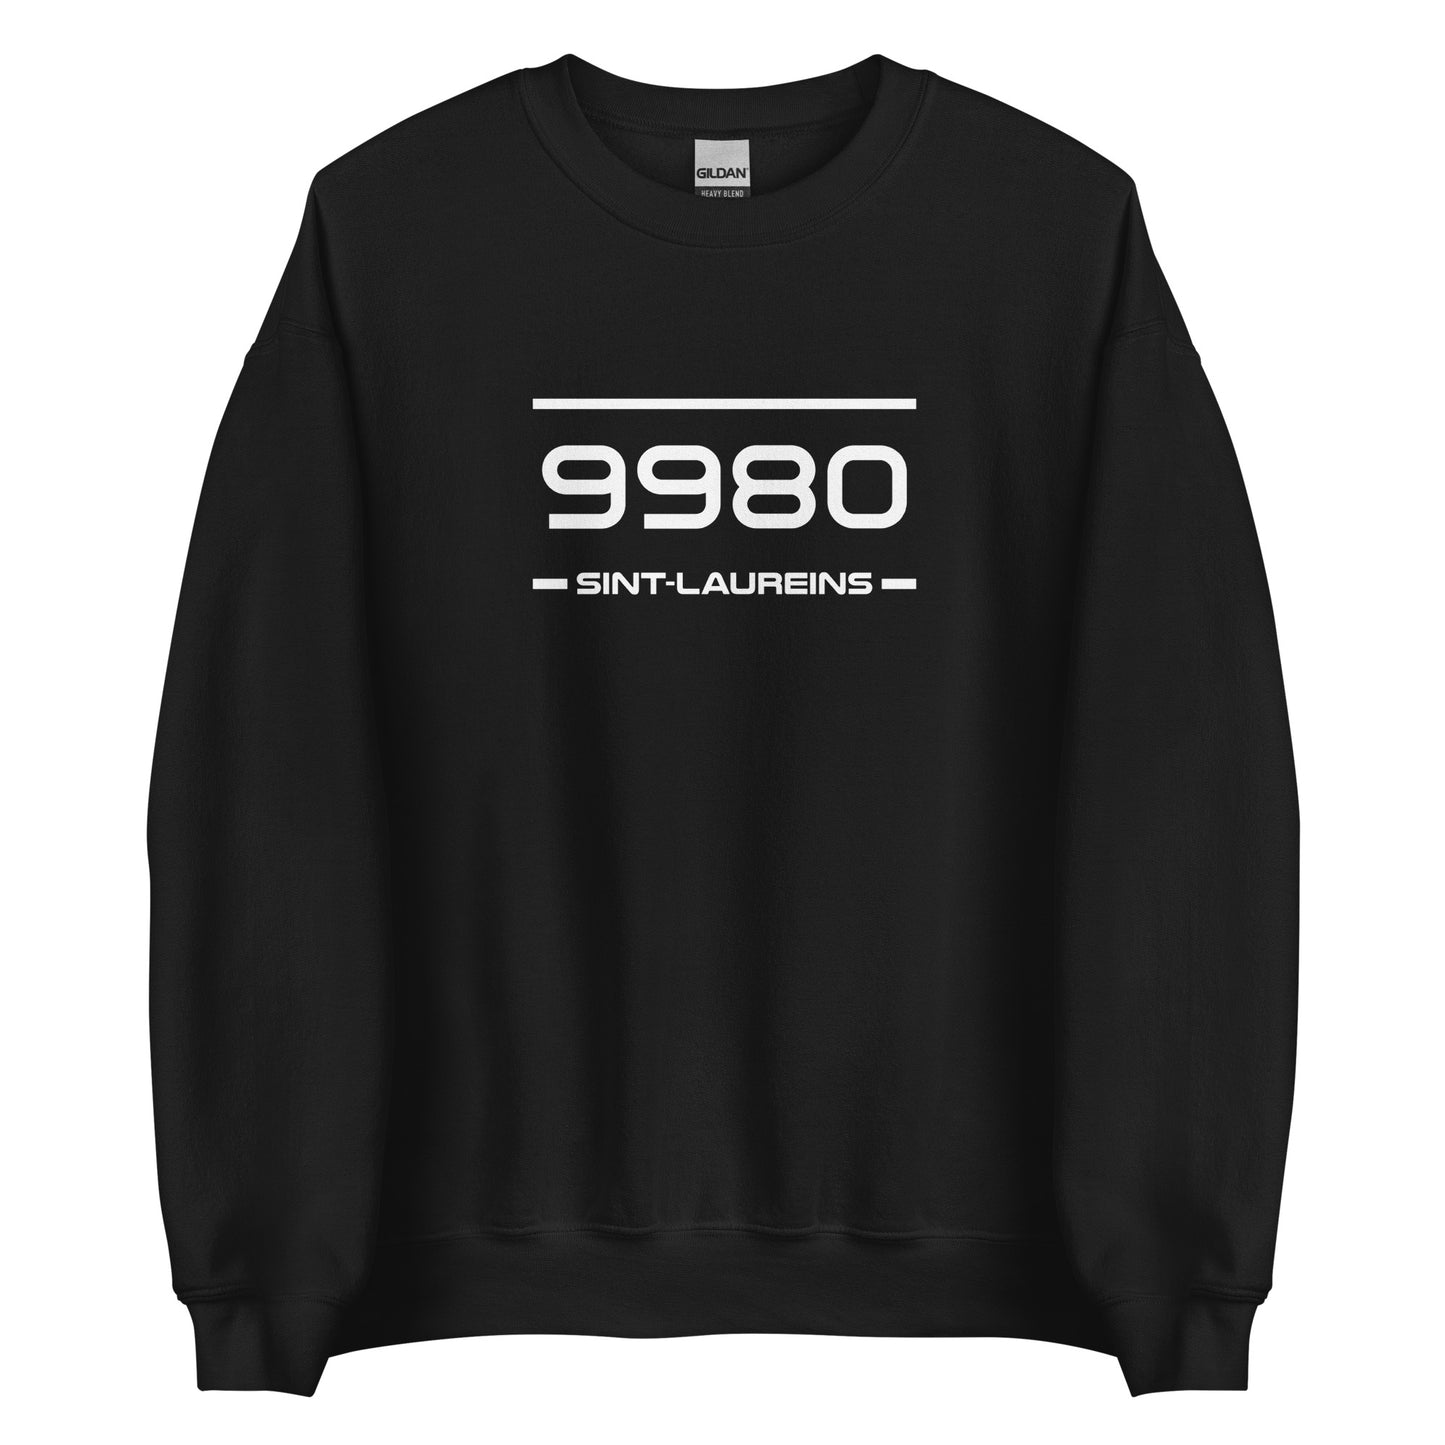 Sweater - 9980 - Sint-Laureins (M/V)